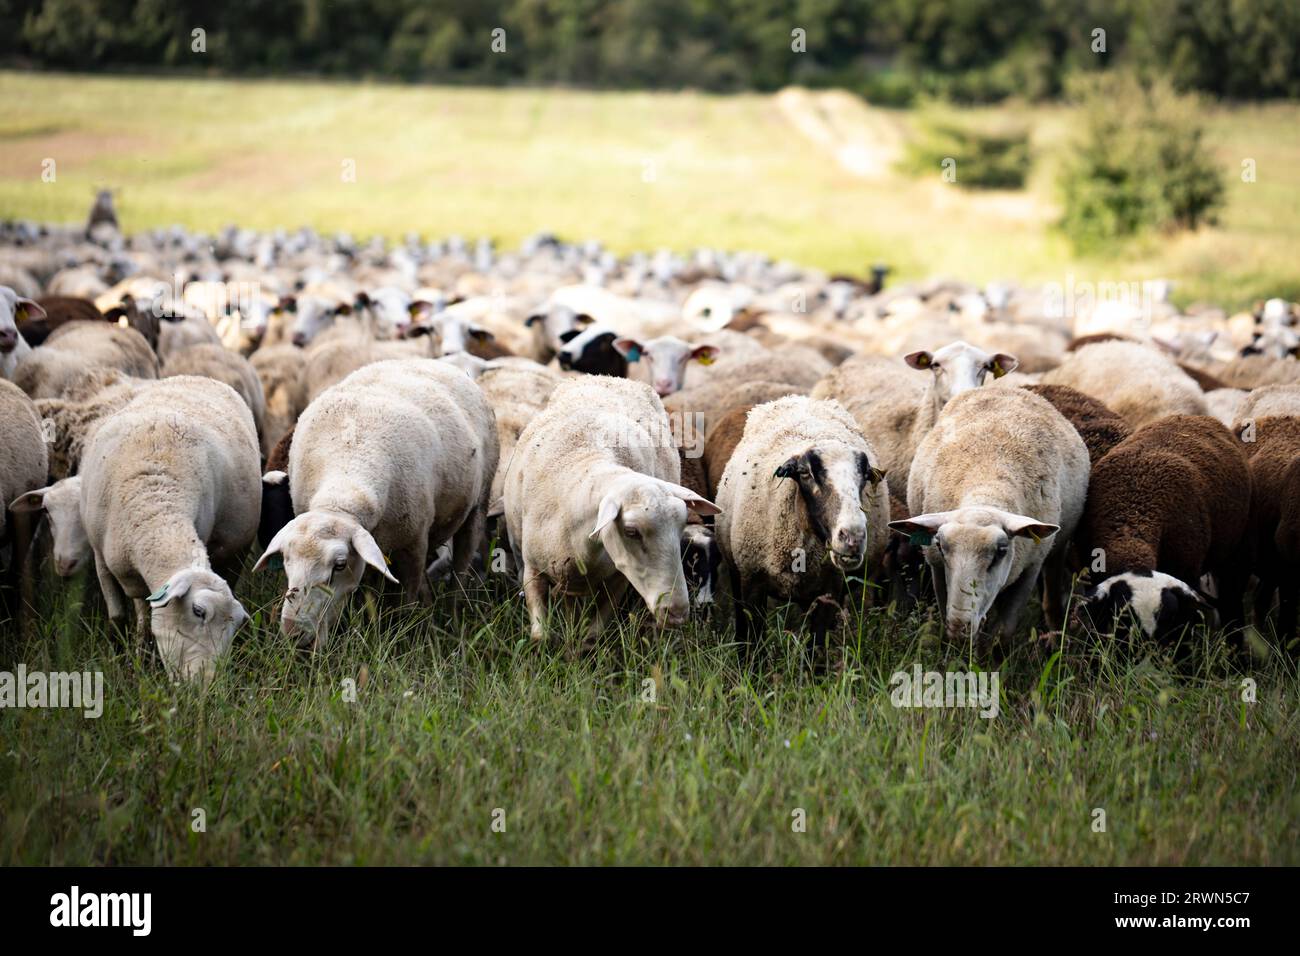 El Soler de n'Hug sheep flock (Ovis aries). Prats de Lluçanès, El Lluçanès, Barcelona, Catalonia, Spain, Europe Stock Photo